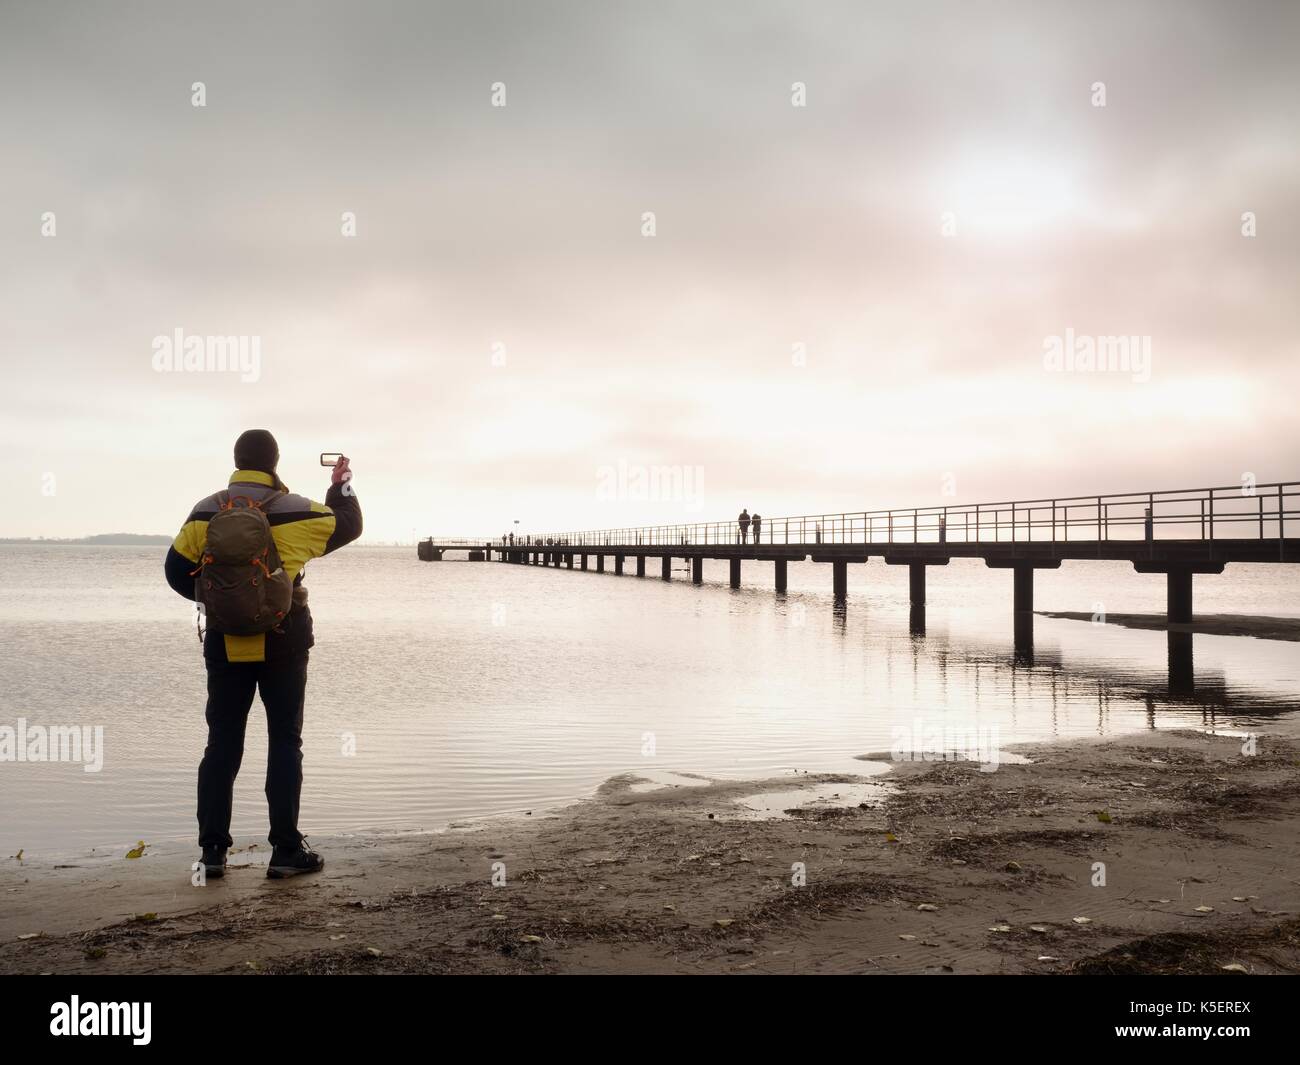 Mann Wanderer mit Rucksack stand alone auf schmutzigen Sandstrand und romantischen farbenfrohen Sonnenaufgang über hölzerne Seebrücke. Vintage Style getönten Wirkung Stockfoto